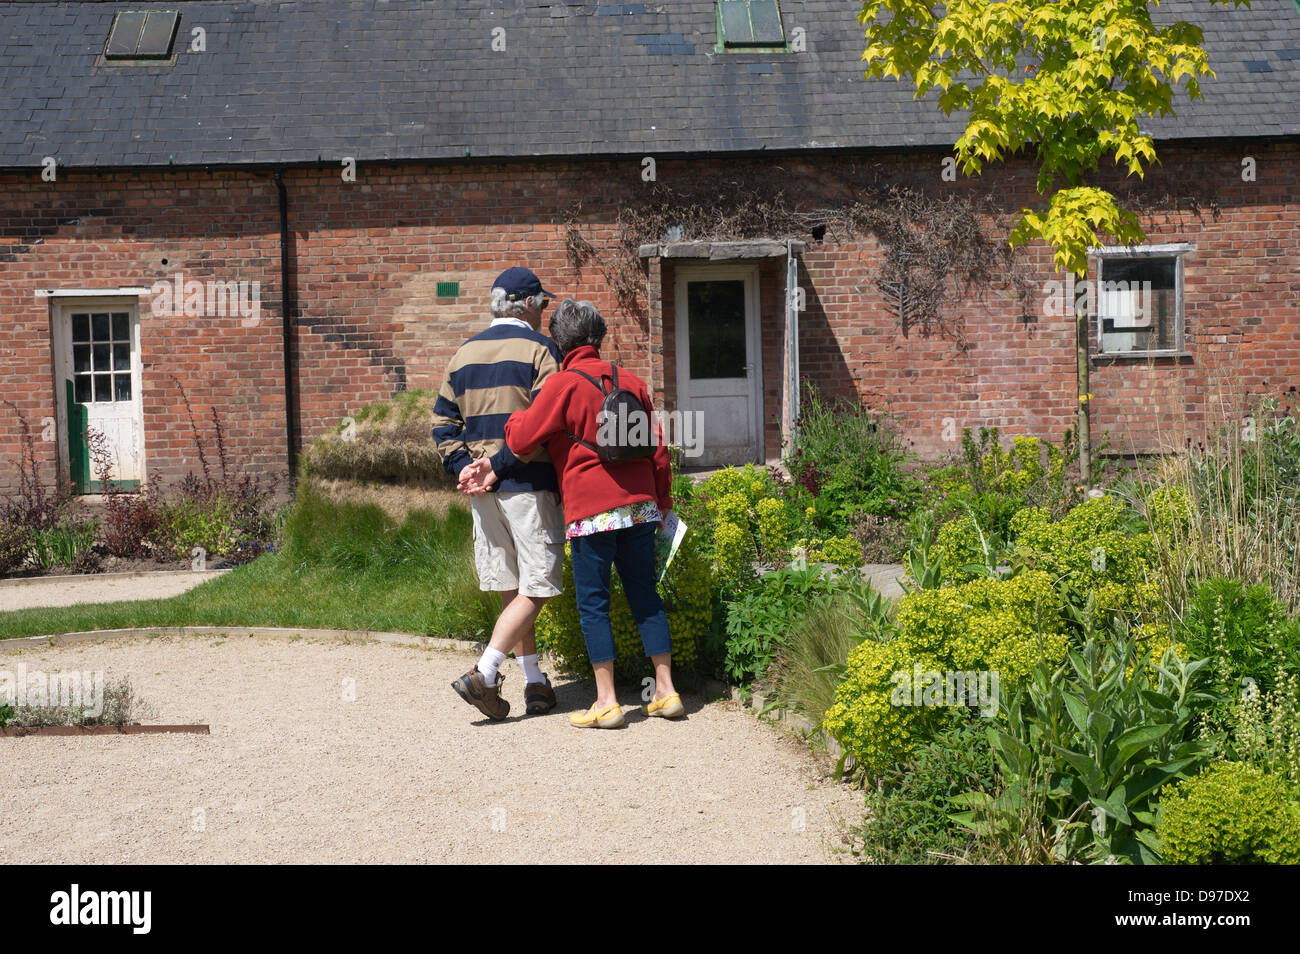 Buscando pareja senior y disfrutar de un jardín en el Reino Unido durante el verano, con un gran edificio de ladrillo rural en el fondo Foto de stock